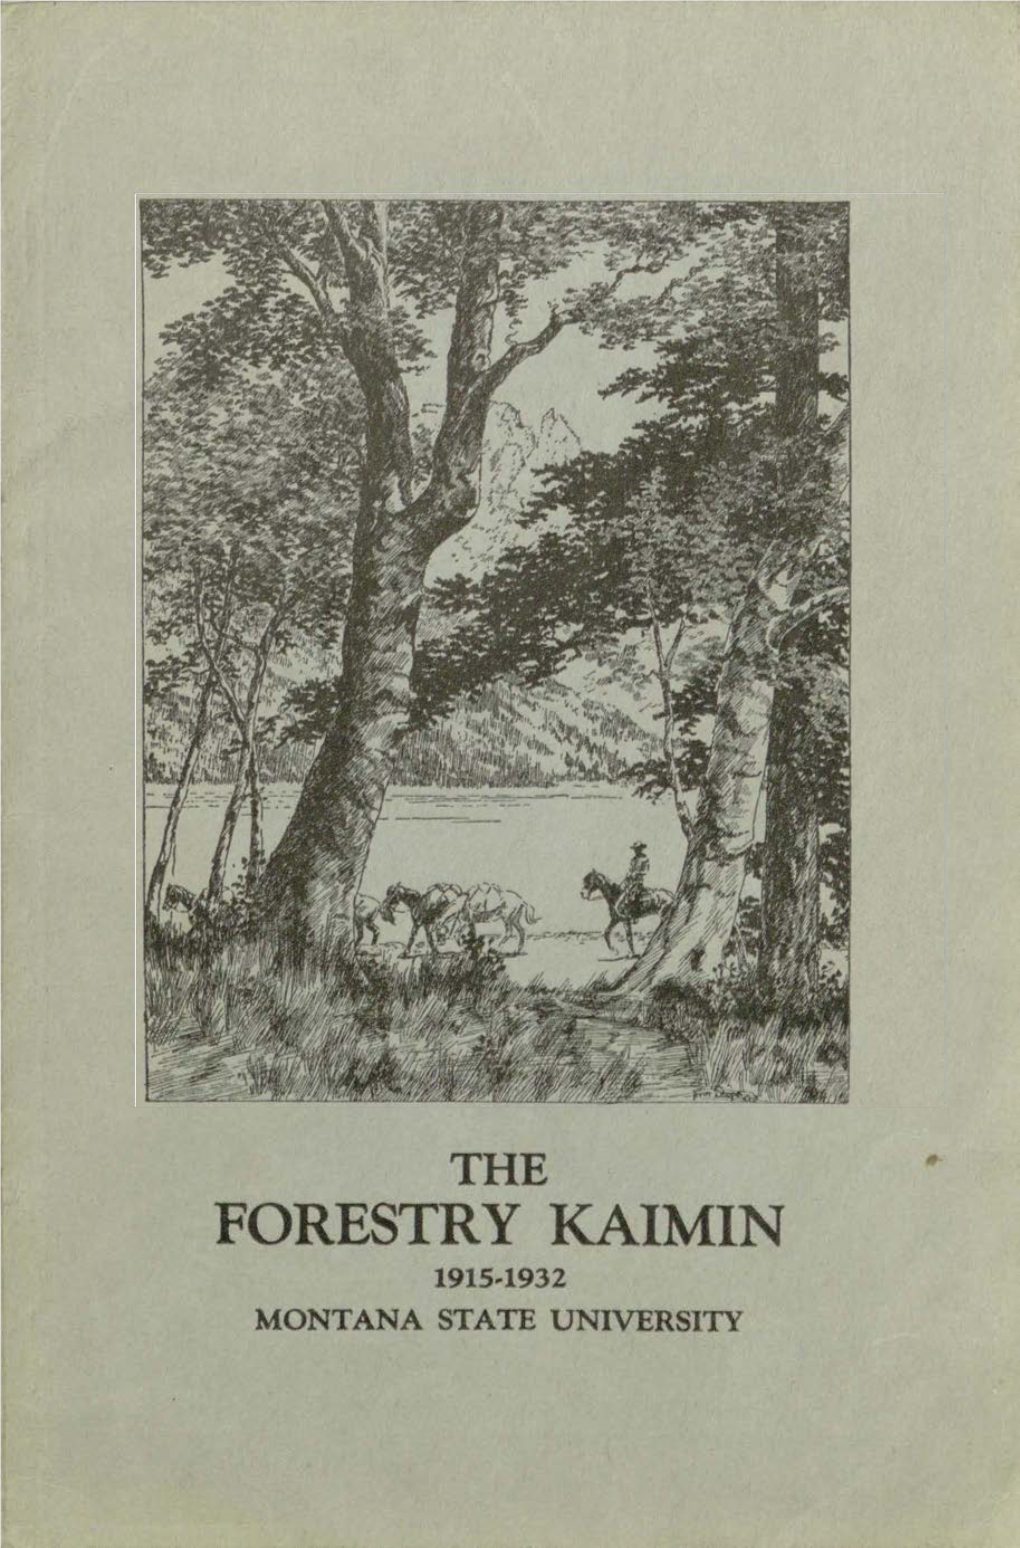 Forestry Kaimin, 1932